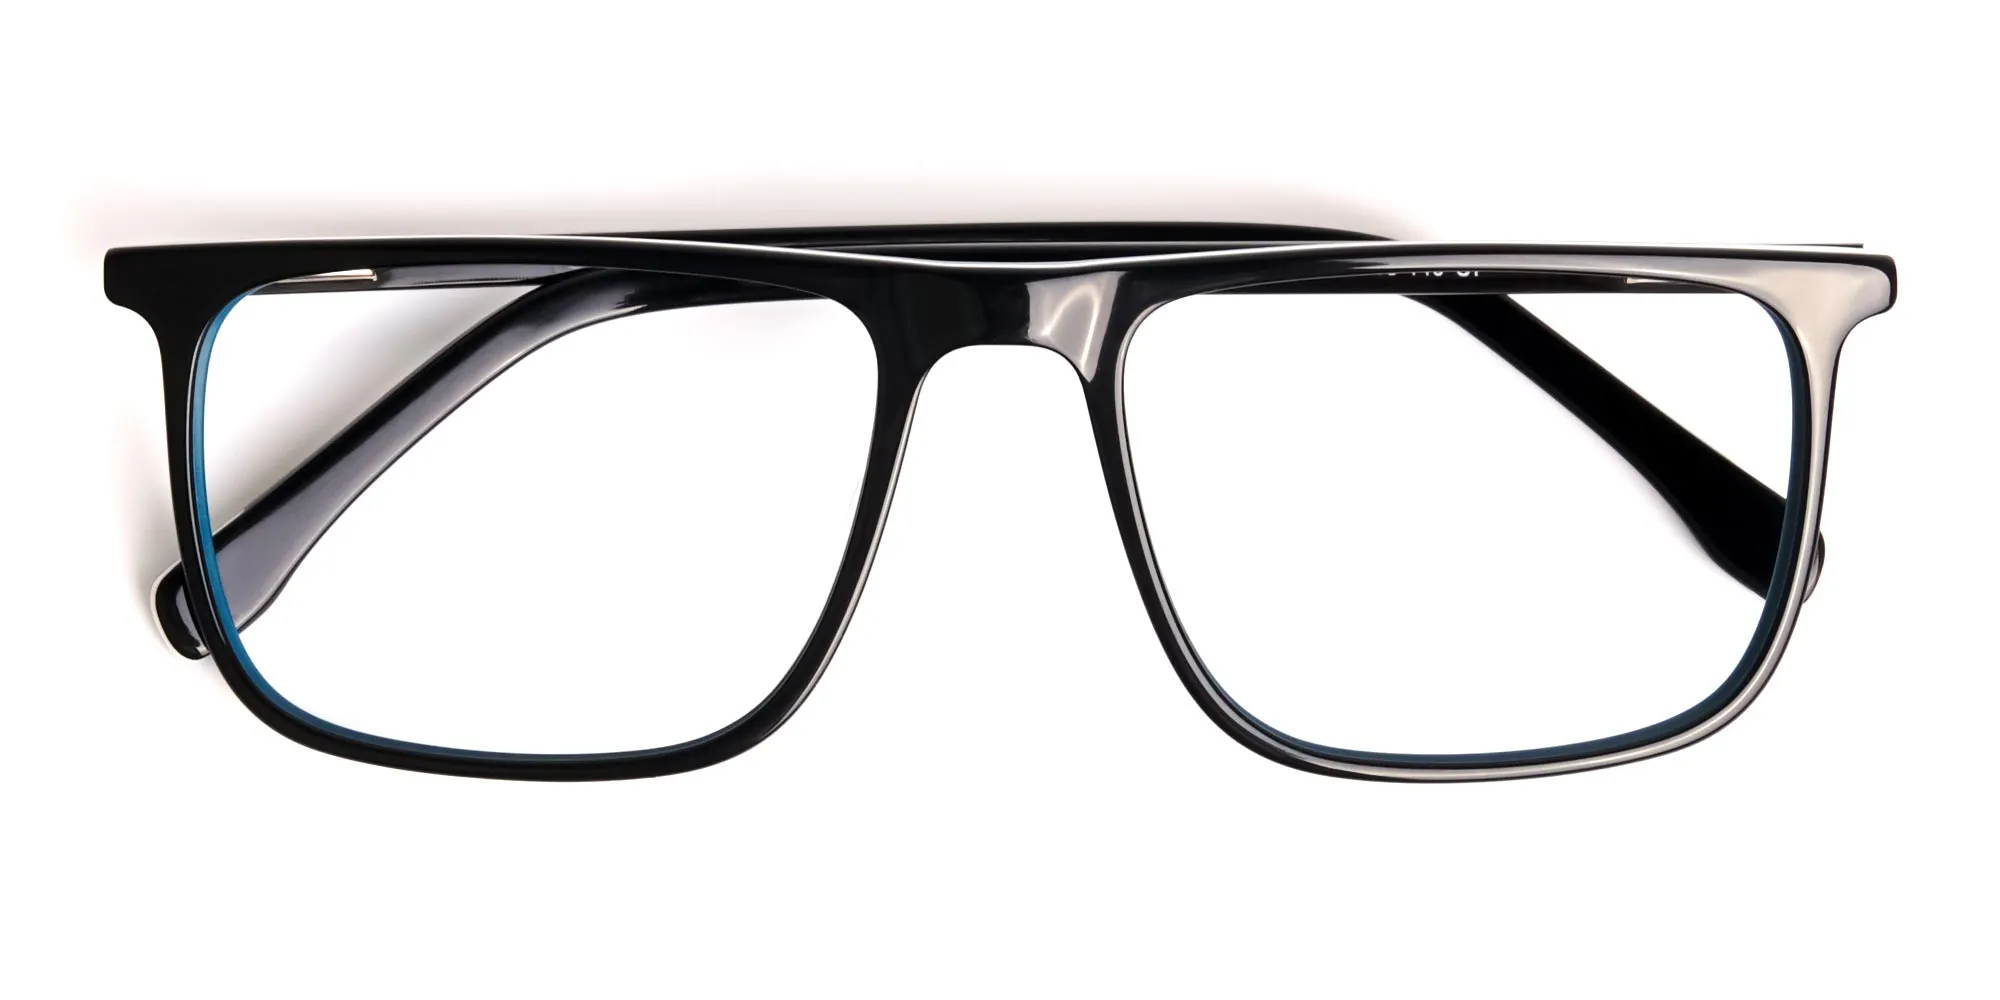 black-and-teal-full-rim-rectangular-glasses-frames-2